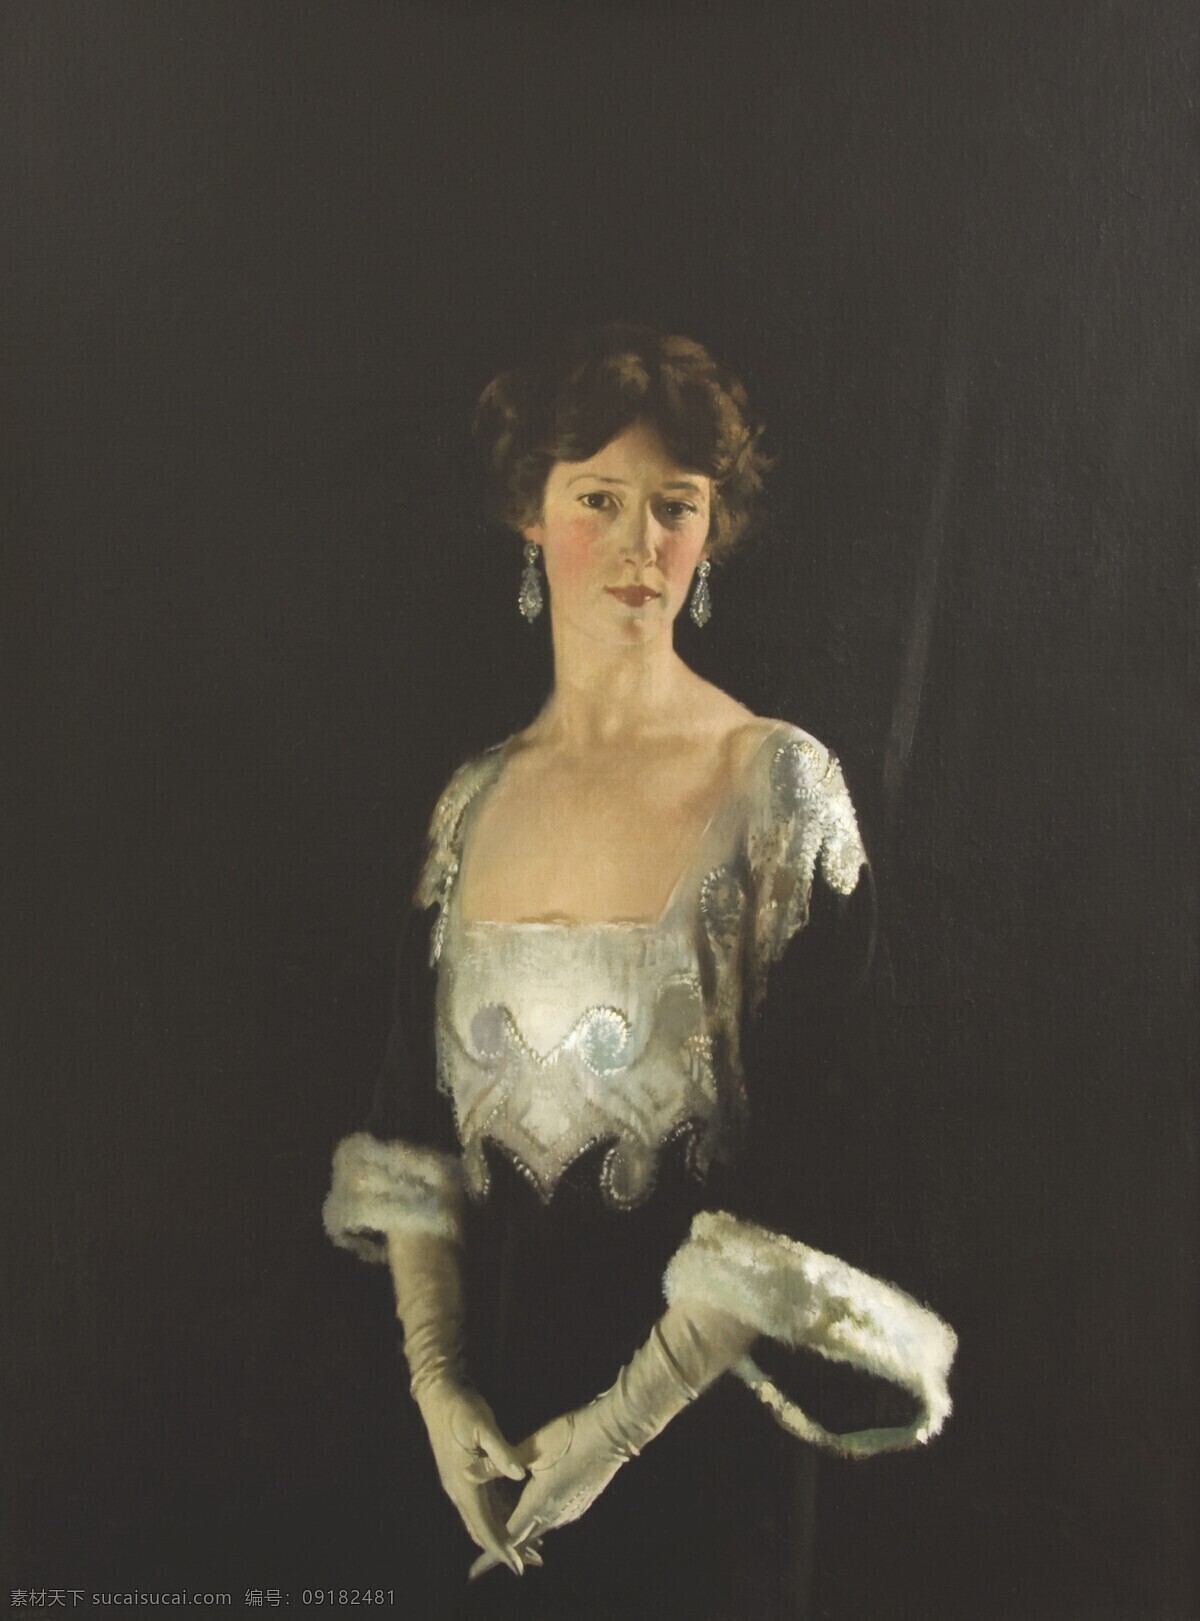 贵妇人 英国 维多利亚时代 贵族 中年女性 半身画像 19世纪油画 油画 绘画书法 文化艺术